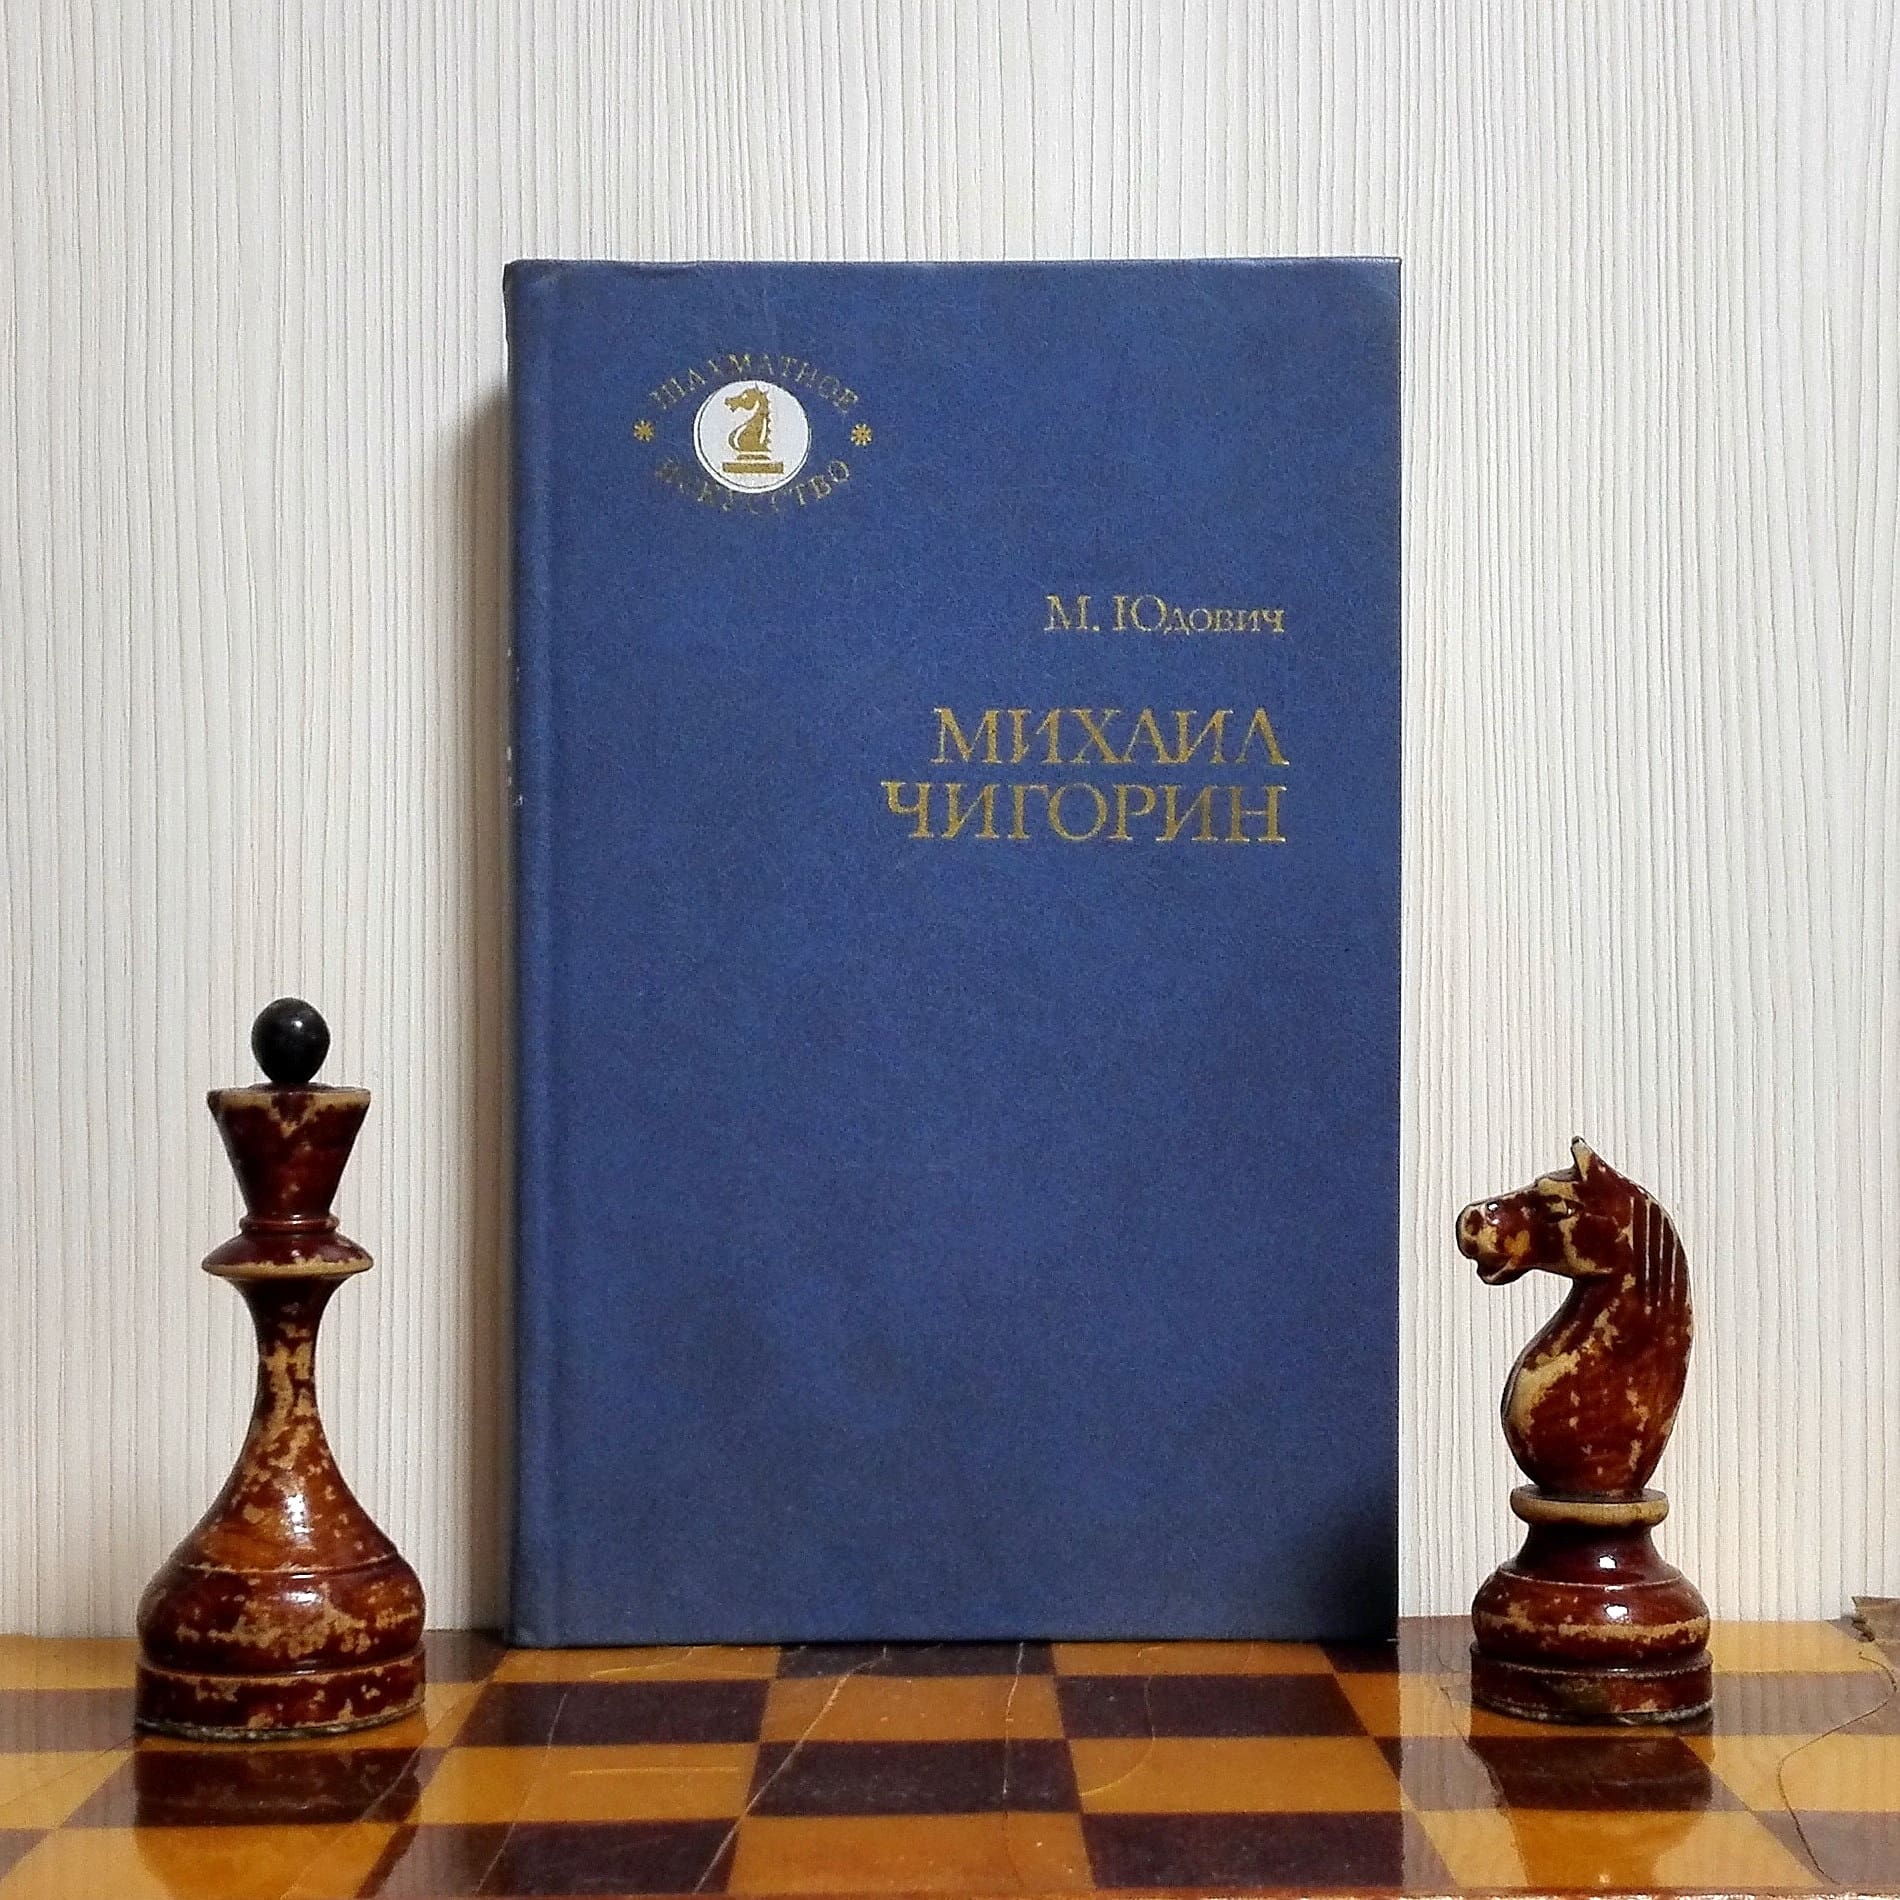 mikhail chigorin chess books